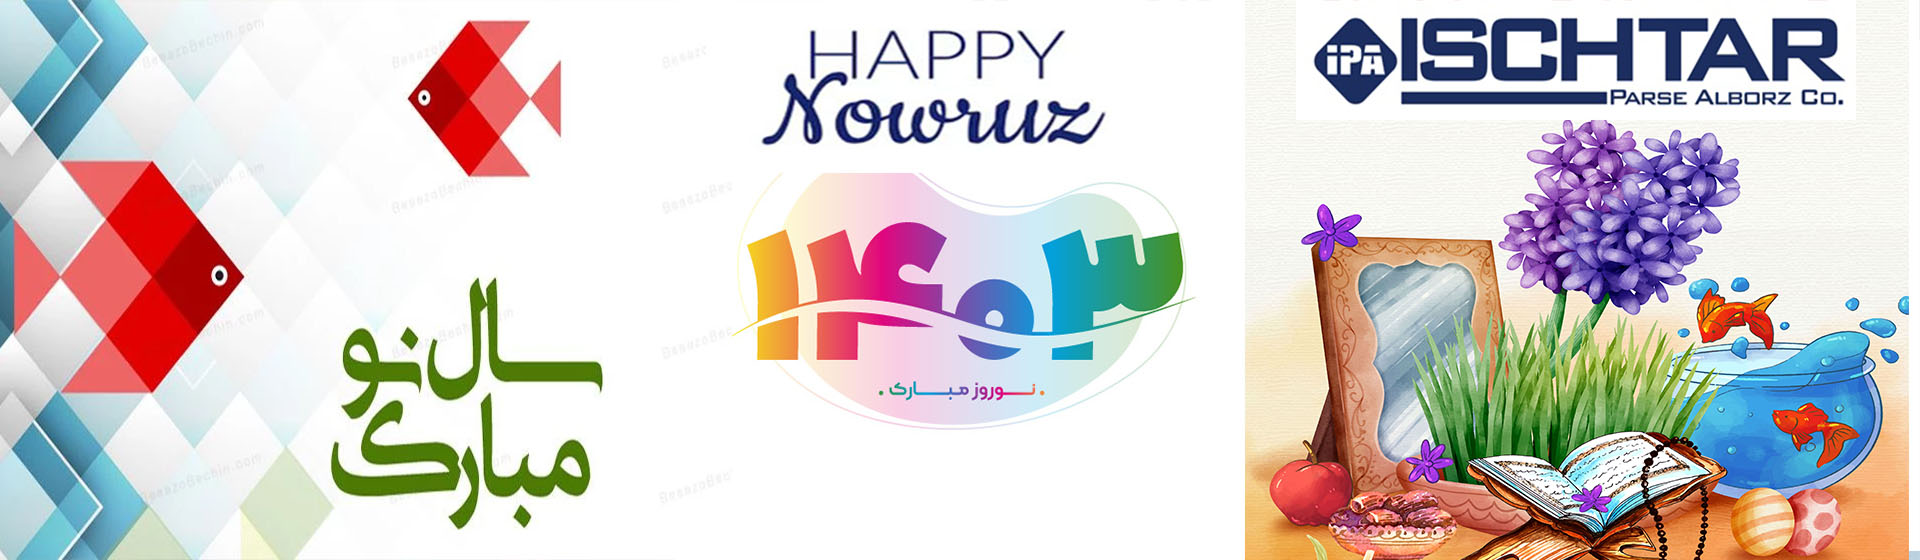 nowruz